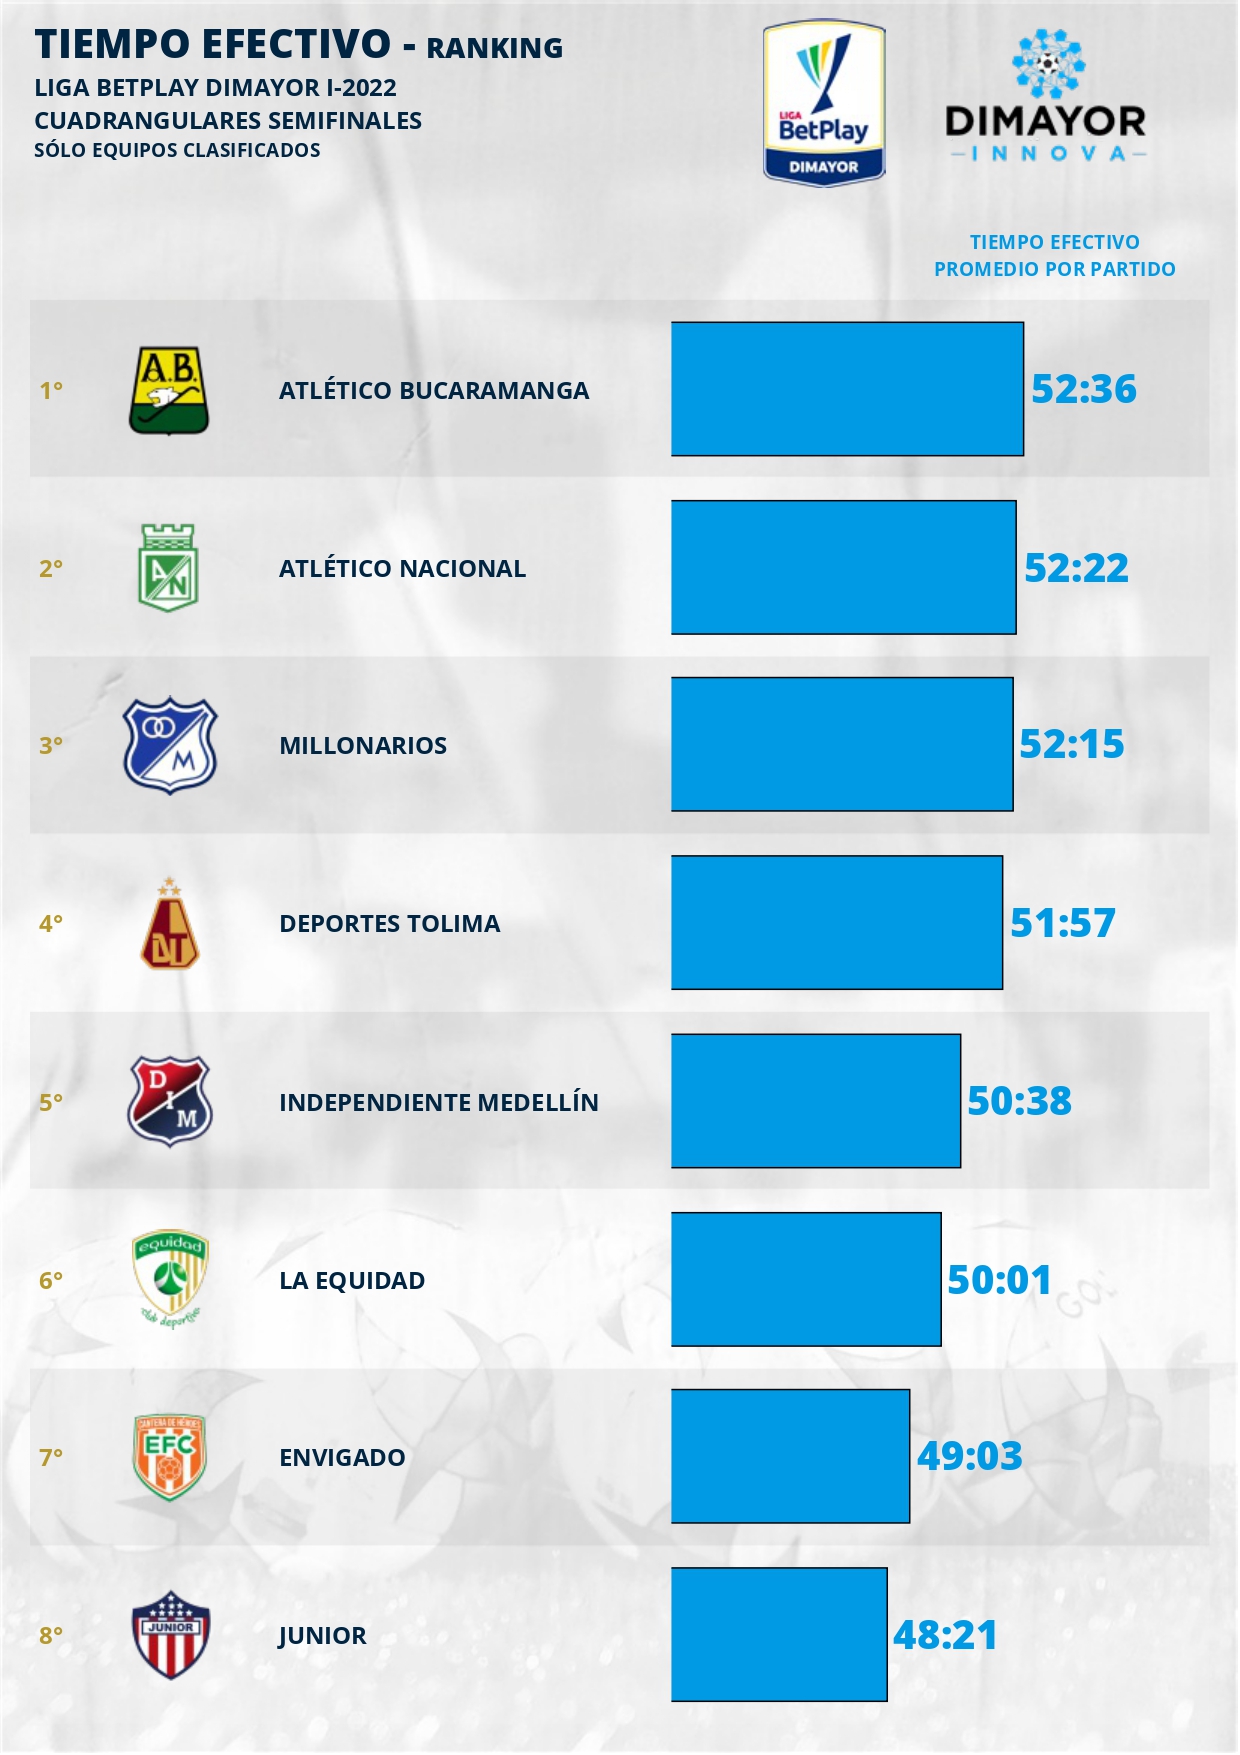 Estos son los equipos que más tiempo pierden en finales del fútbol colombiano